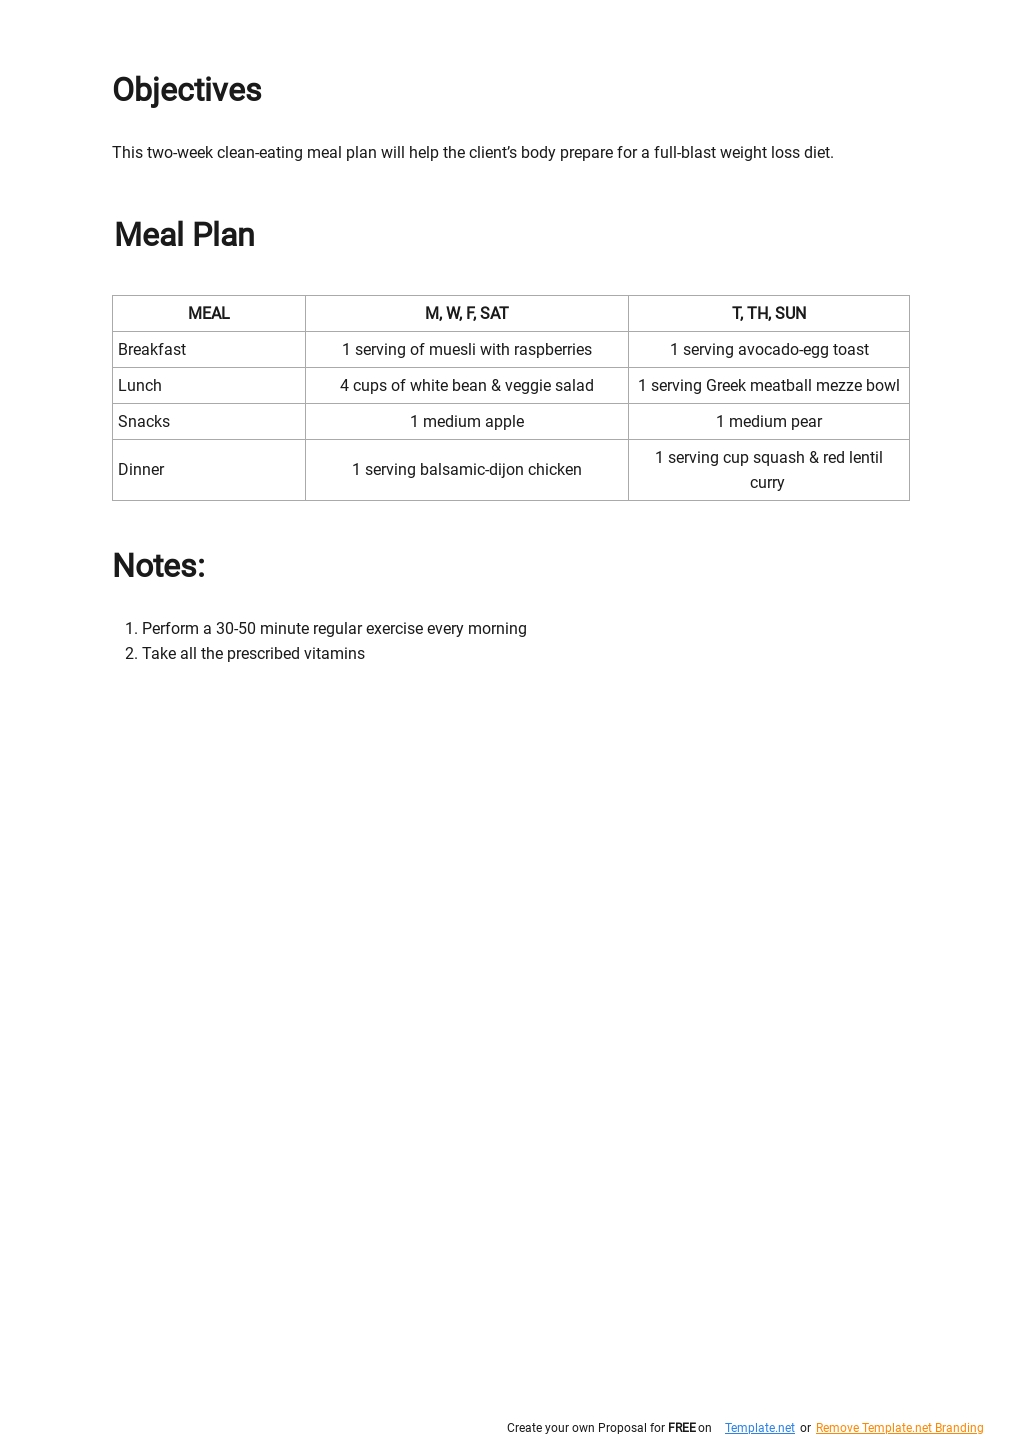 Free Simple Two Week Meal Plan Template - Google Docs, Word, Apple ...